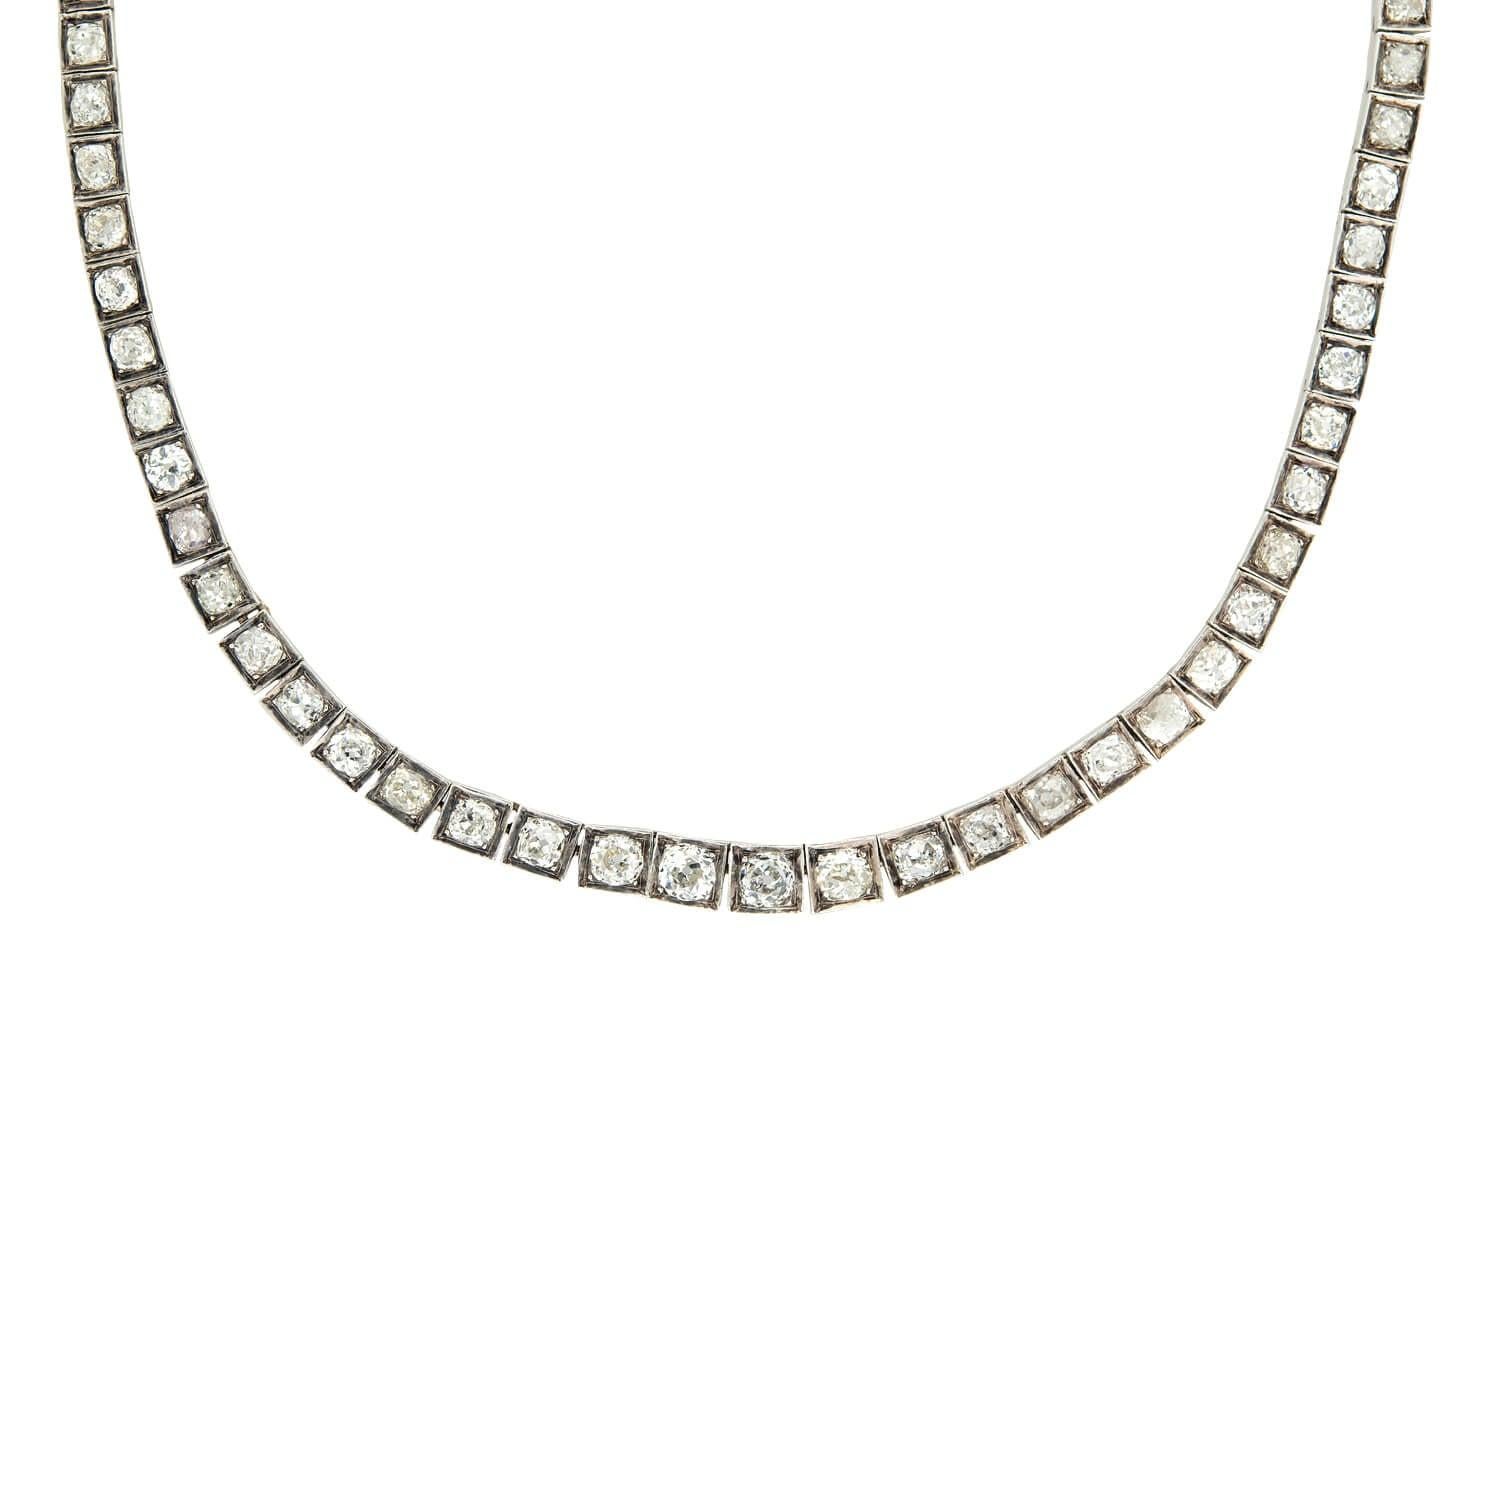 Ein exquisites Riviera-Diamantencollier aus der Edwardianischen Ära (ca. 1910)! Diese wunderschöne Halskette aus 18 Karat Weiß- und Gelbgold ist mit 77 Diamanten im Altminenschliff besetzt, die in Weißgoldkästchen gefasst sind. Die Diamanten sind